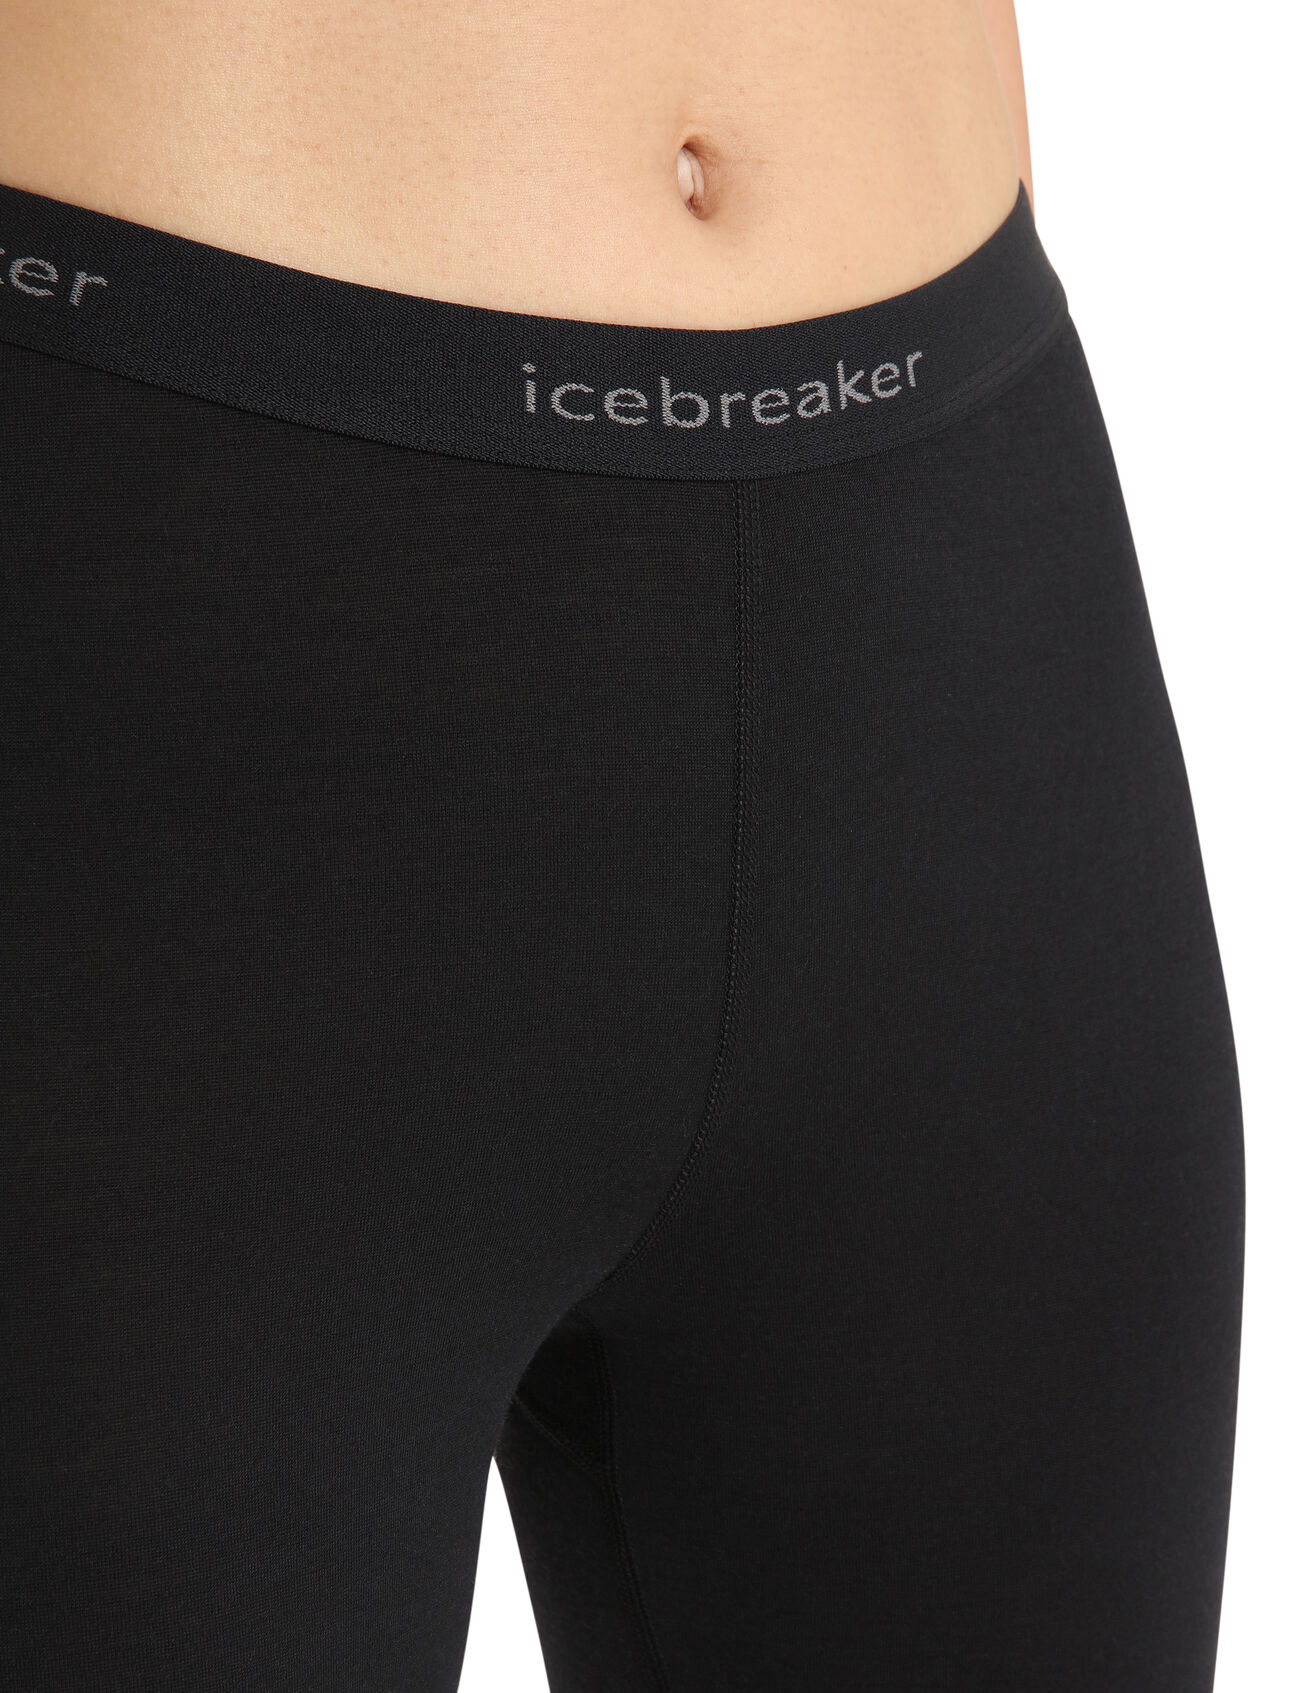 Icebreaker Women's 200 Oasis Leggings - Black